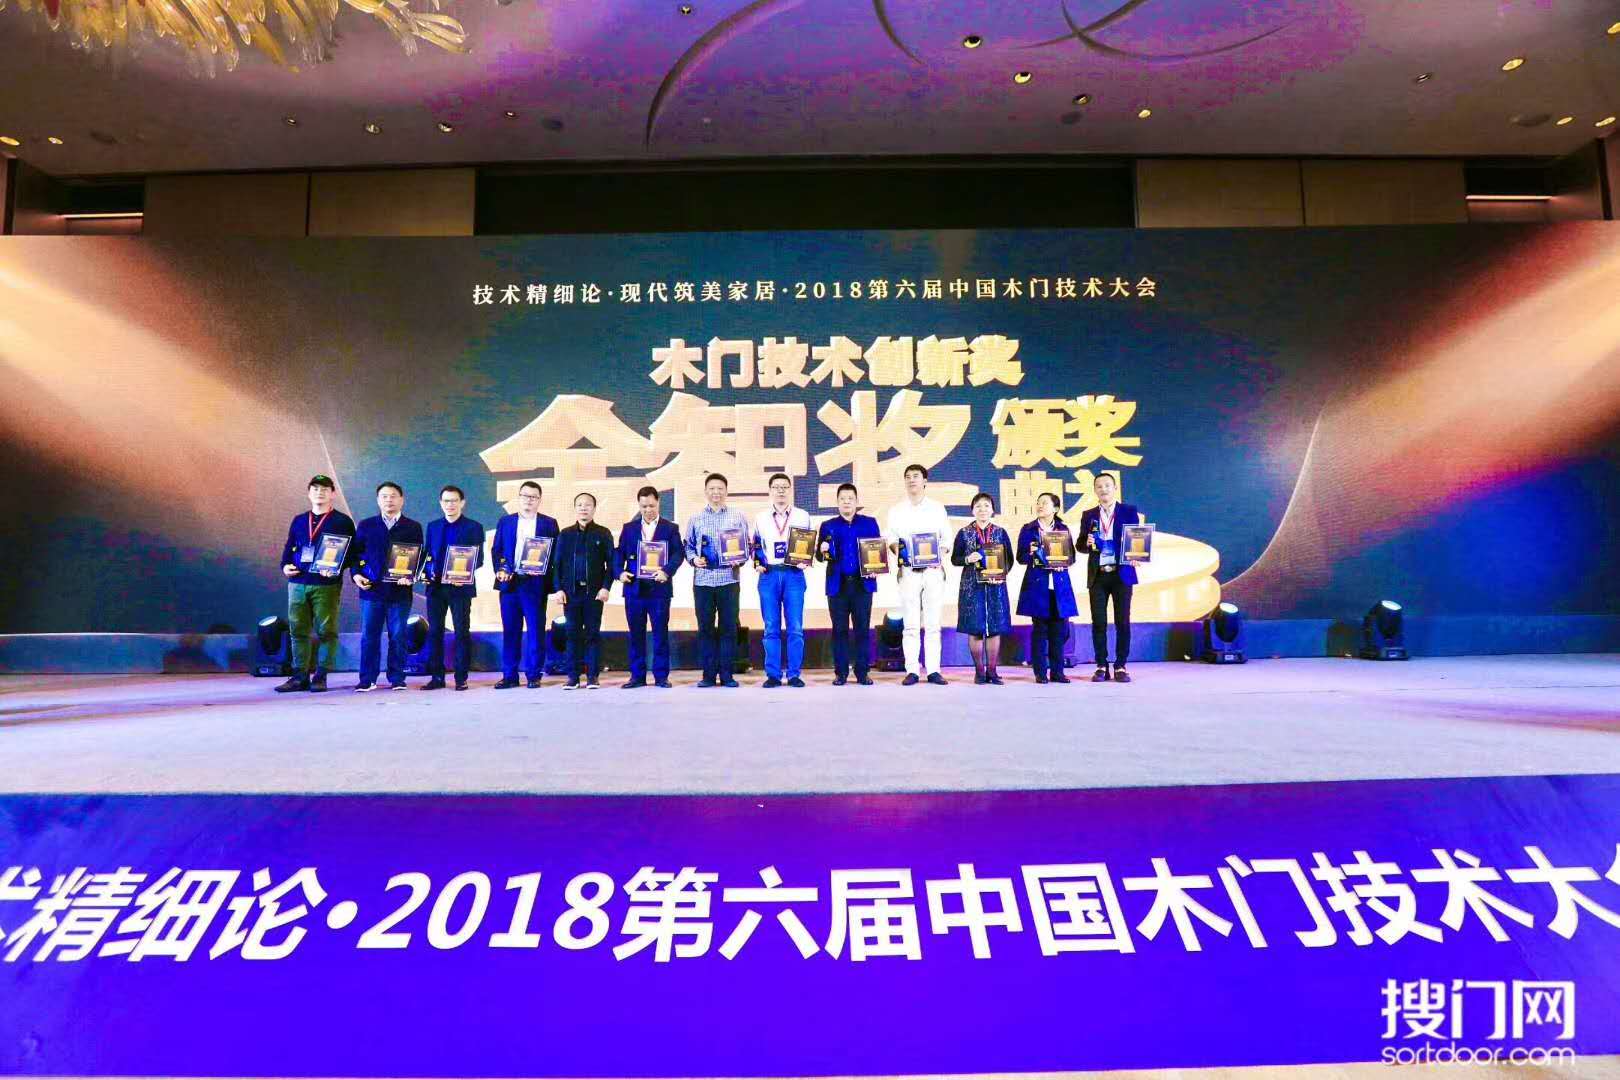 第六届中国木门技术大会“金智奖”颁发，bob彩票
木门再获殊荣